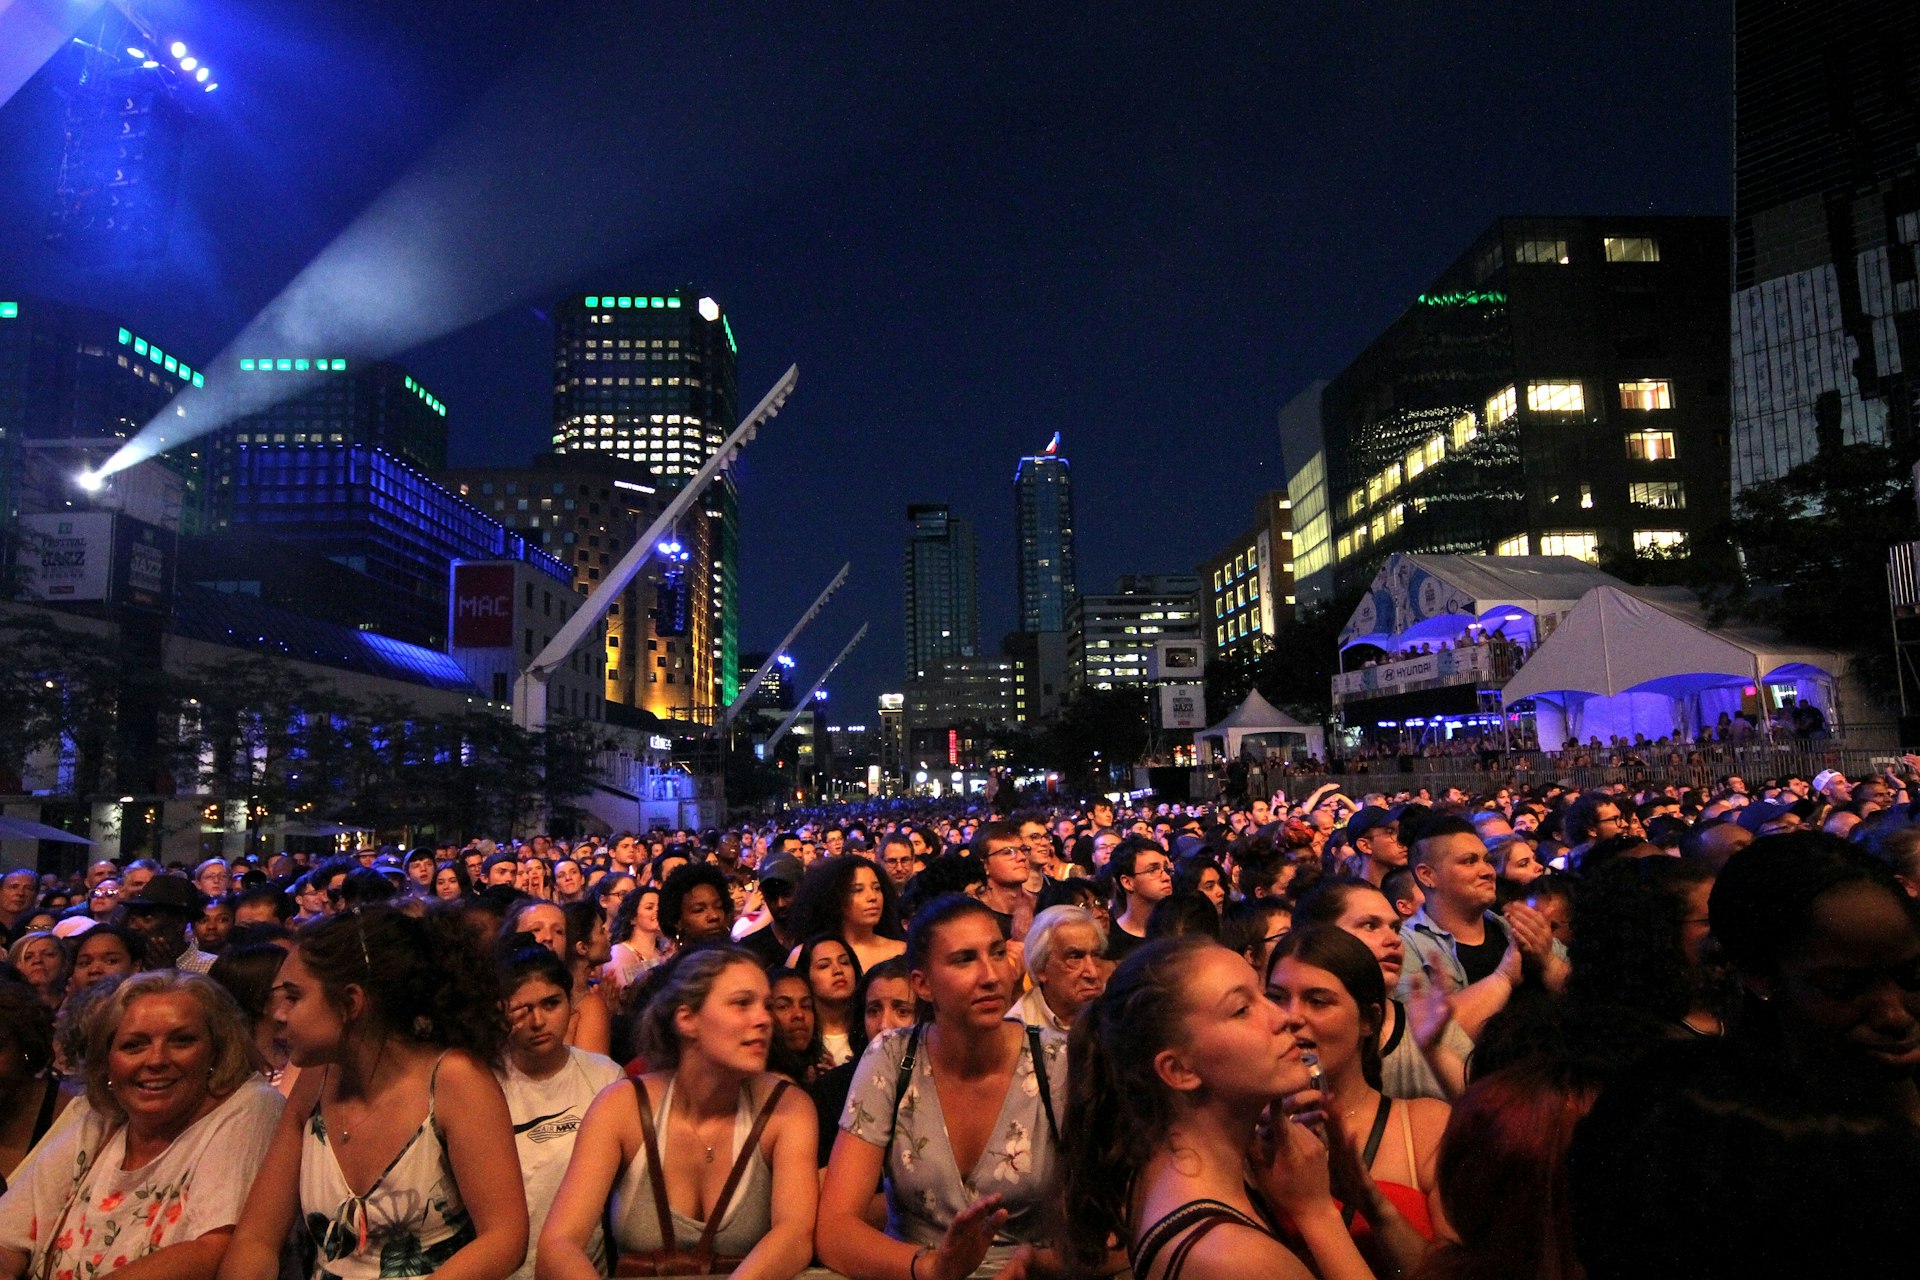 The crowd at the 2018 Festival International de Jazz de Montreal, Quartier des spectacles, Montréal, Québec, Canada